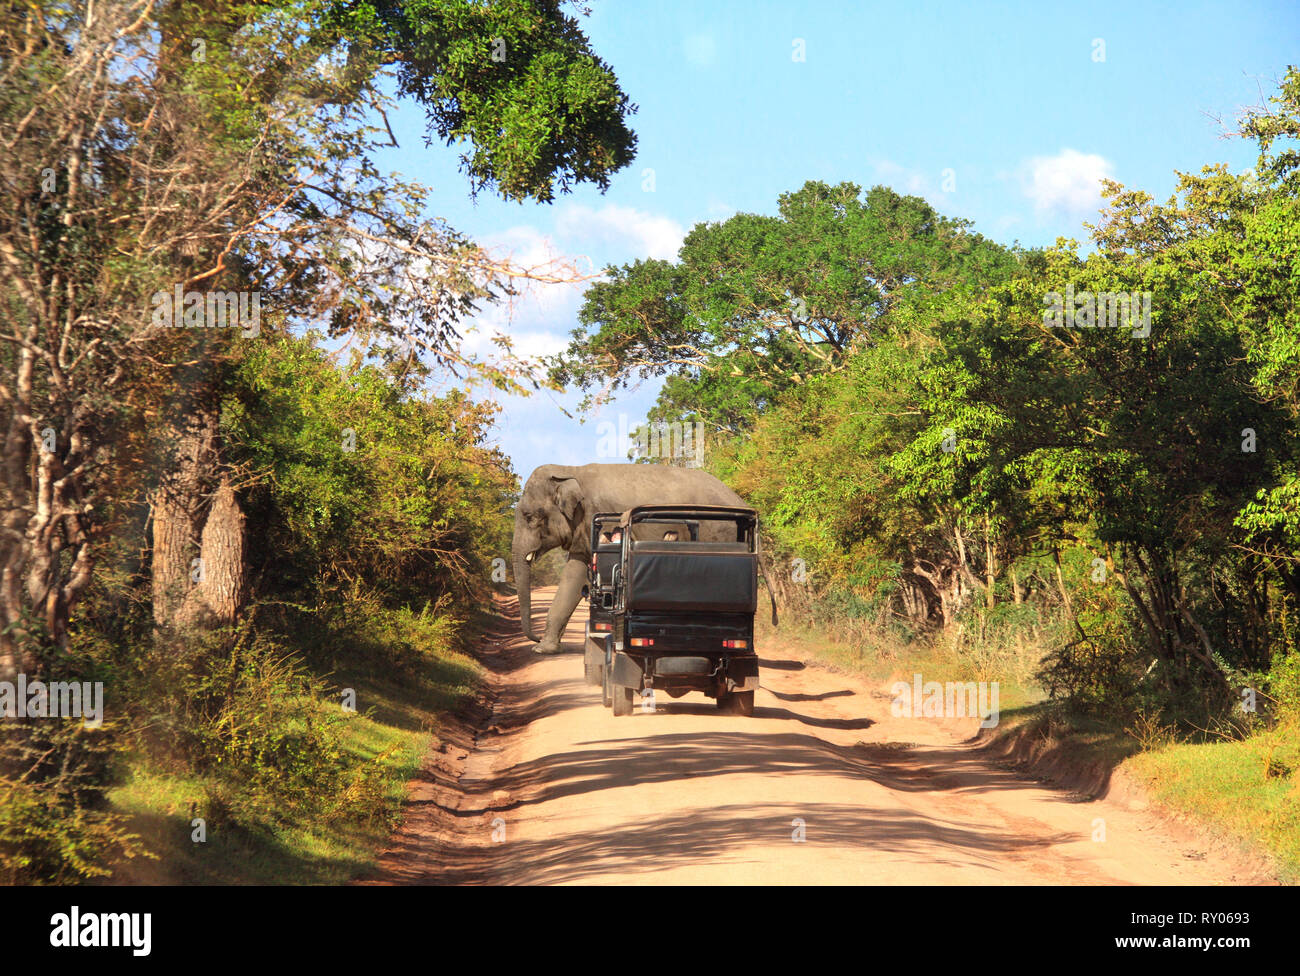 Location de safari dans le parc national de Yala. L'éléphant et les touristes dans les voitures et sur la route poussiéreuse. Sri Lanka Banque D'Images